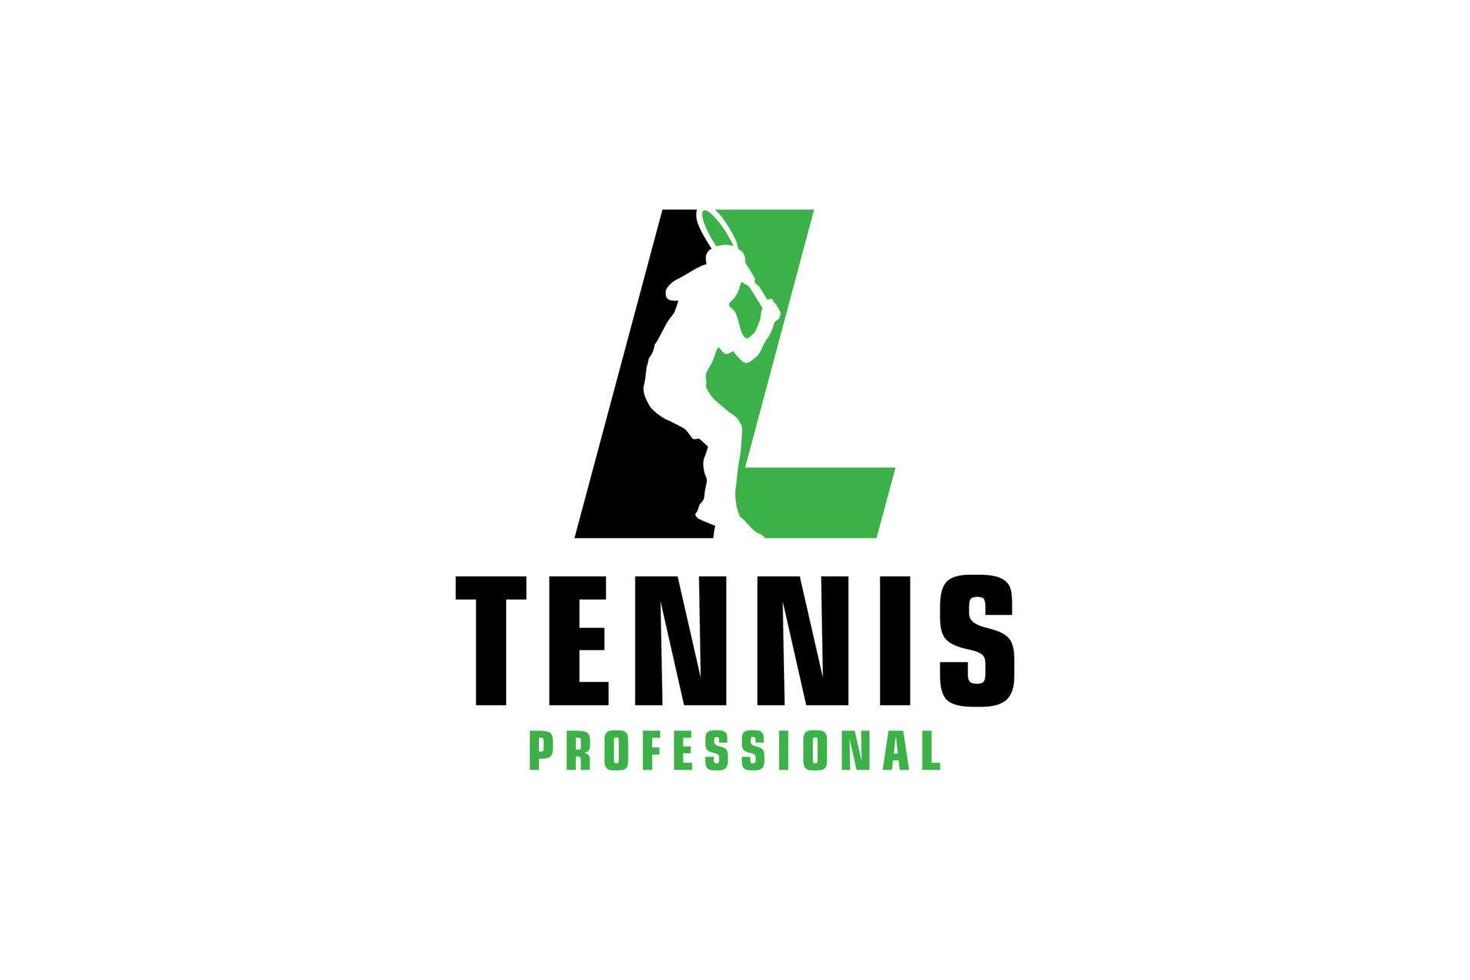 letra l con diseño de logotipo de silueta de jugador de tenis. elementos de plantilla de diseño vectorial para equipo deportivo o identidad corporativa. vector